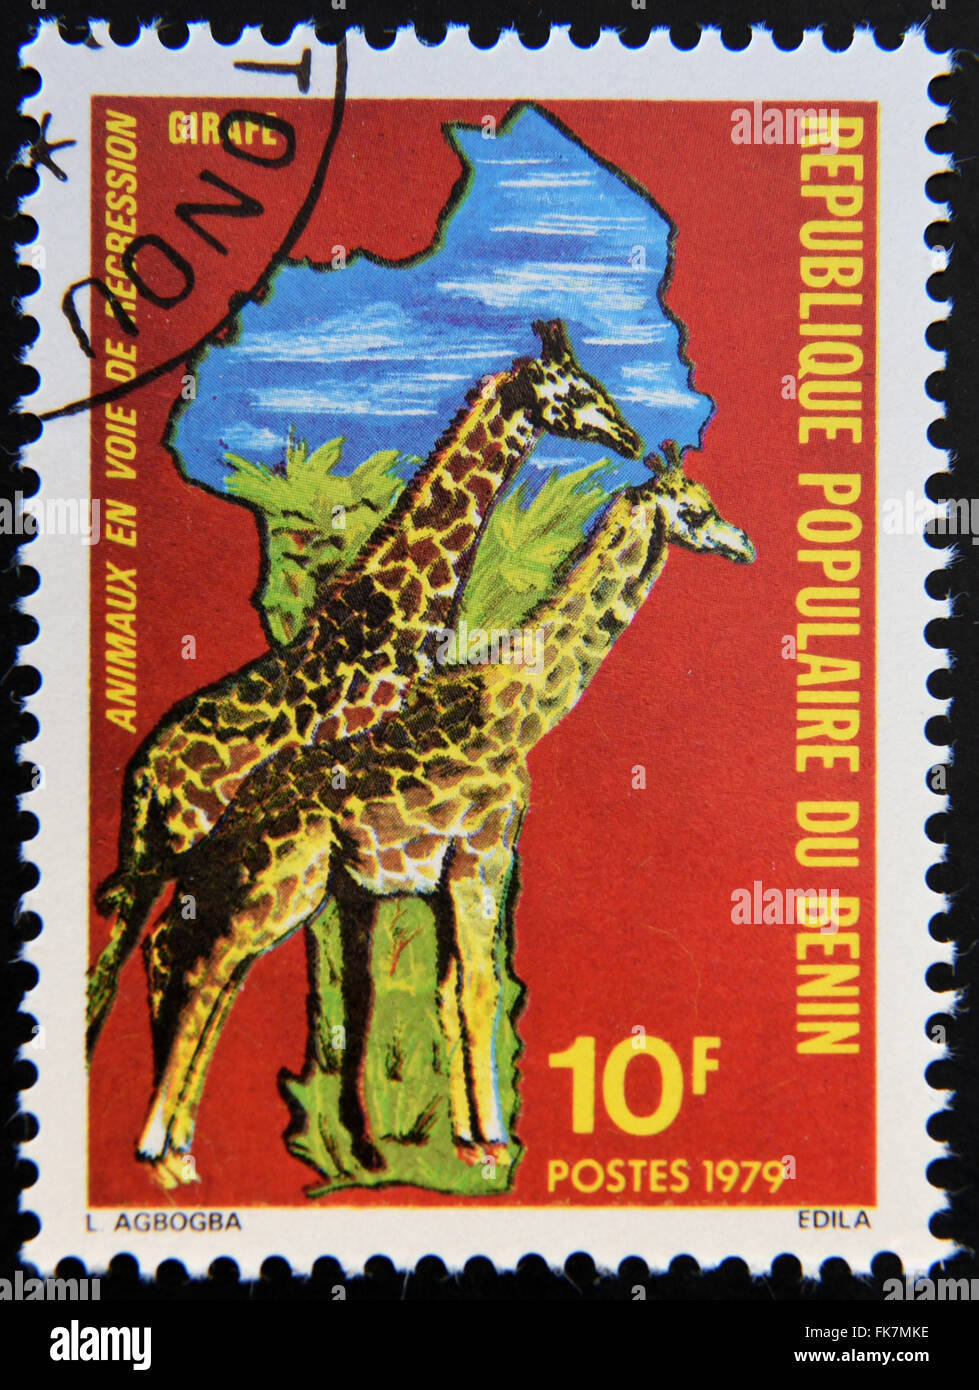 BENIN - ca. 1979: Briefmarke gedruckt in Benin gewidmet vom Aussterben bedrohte Tiere, zeigt Karte Afrikas und Giraffen, ca. 1979. Stockfoto